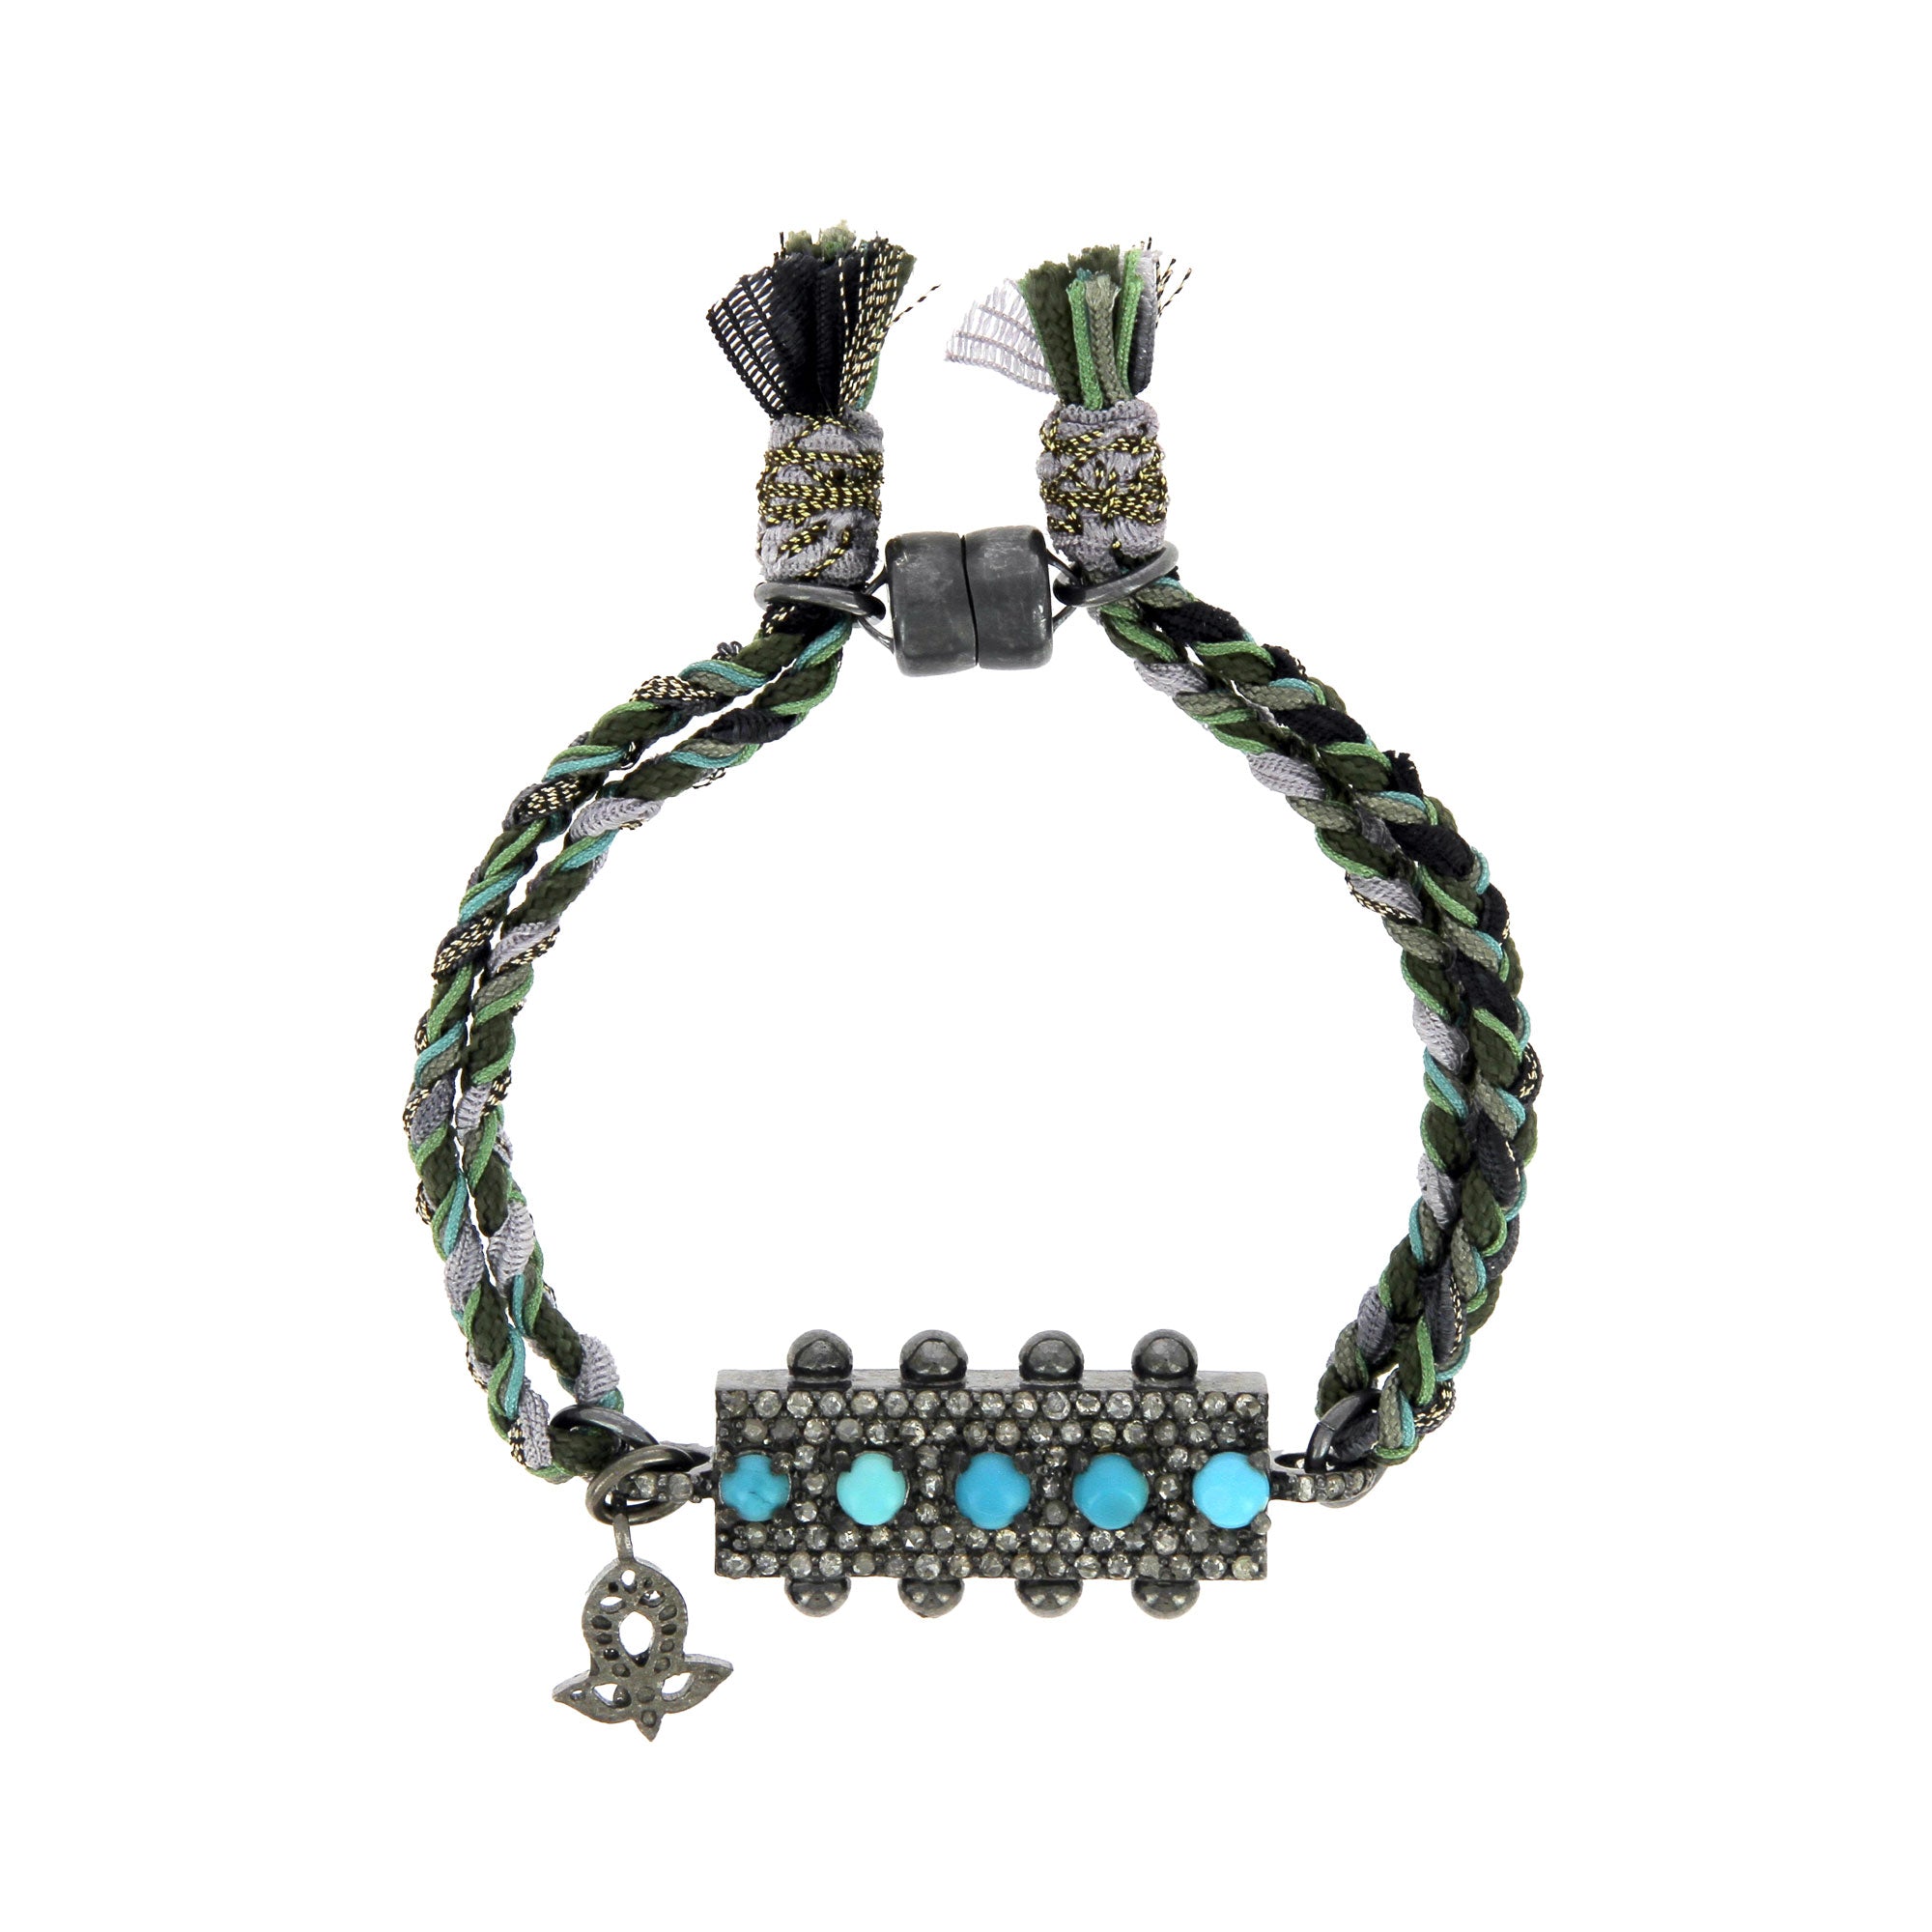 Five Turquoise Bar Clasp Bracelet